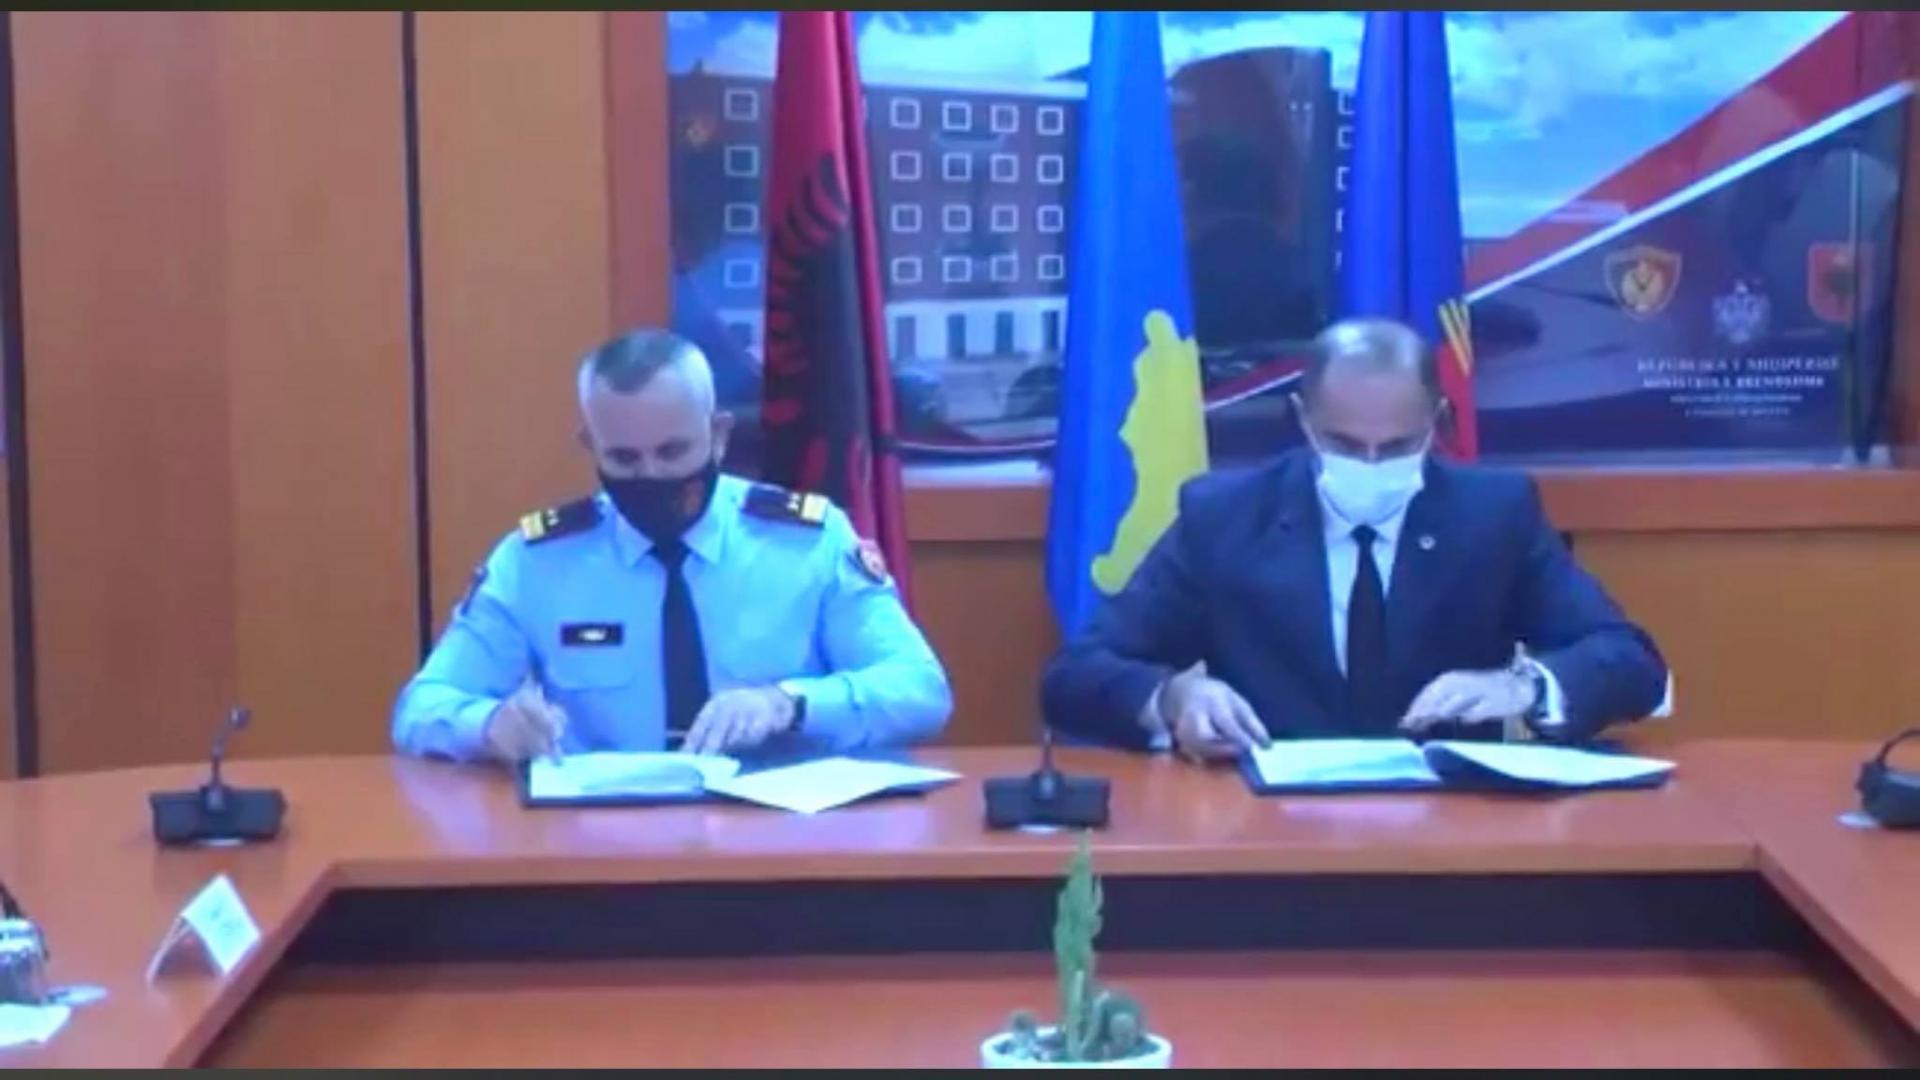 Marrëveshje bashkëpunimi mes Shqipërisë dhe Kosovës në fushën e sigurisë dhe rendit